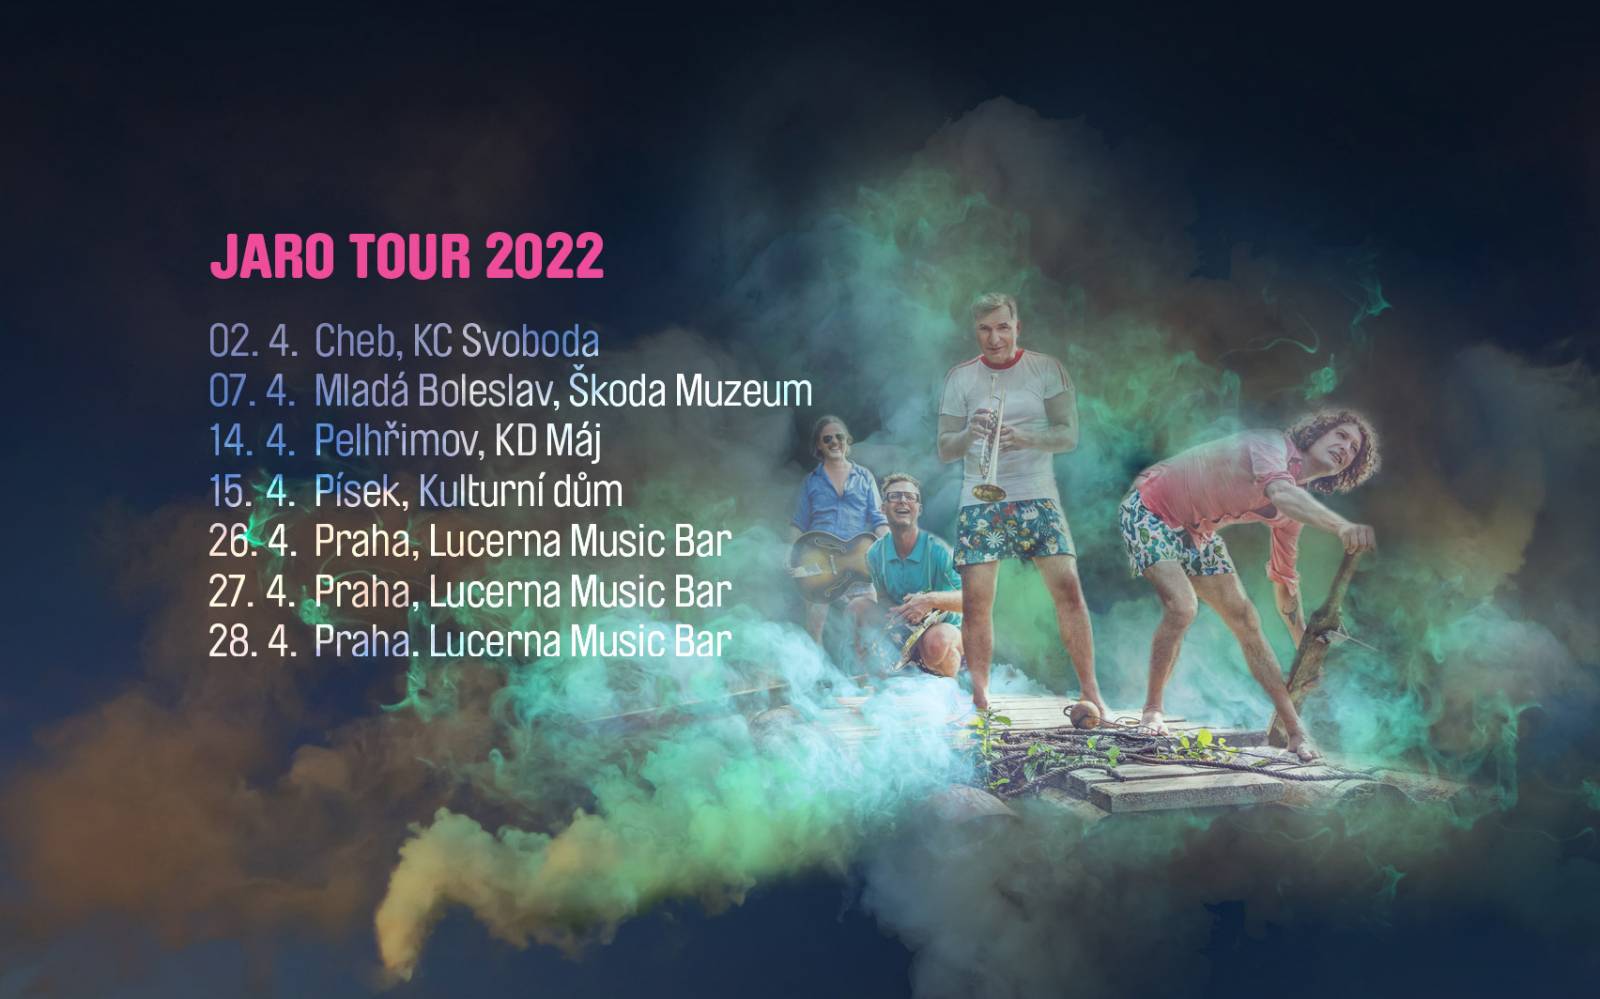 Mig 21 oznamují turné JARO 2022, ještě předtím vystoupí na Žebříku